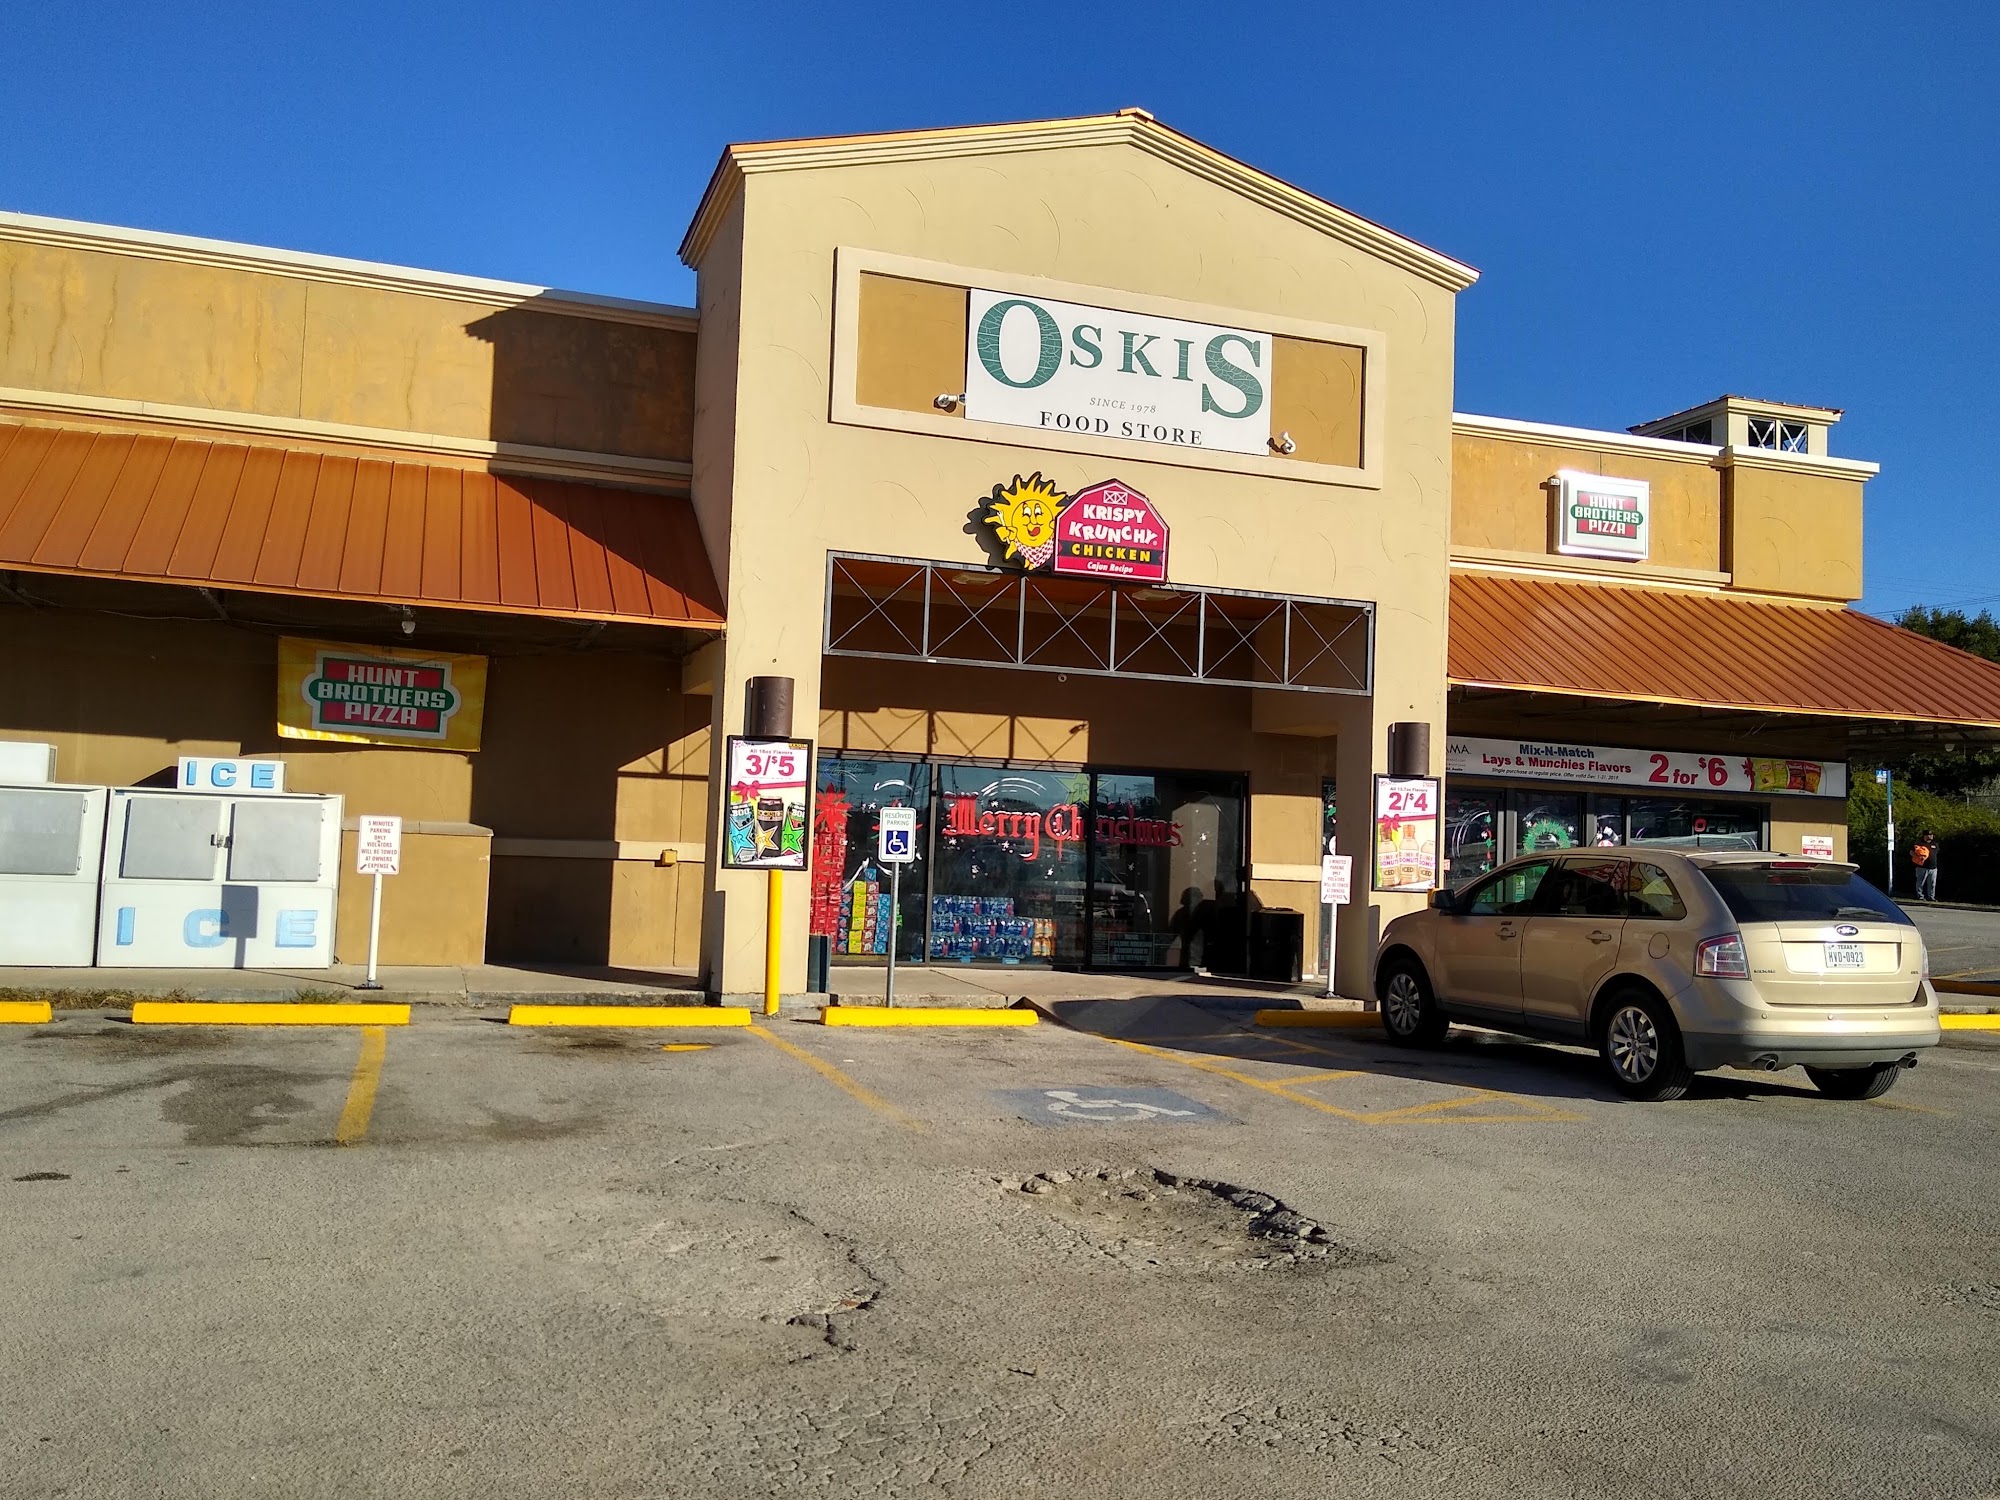 Oski's